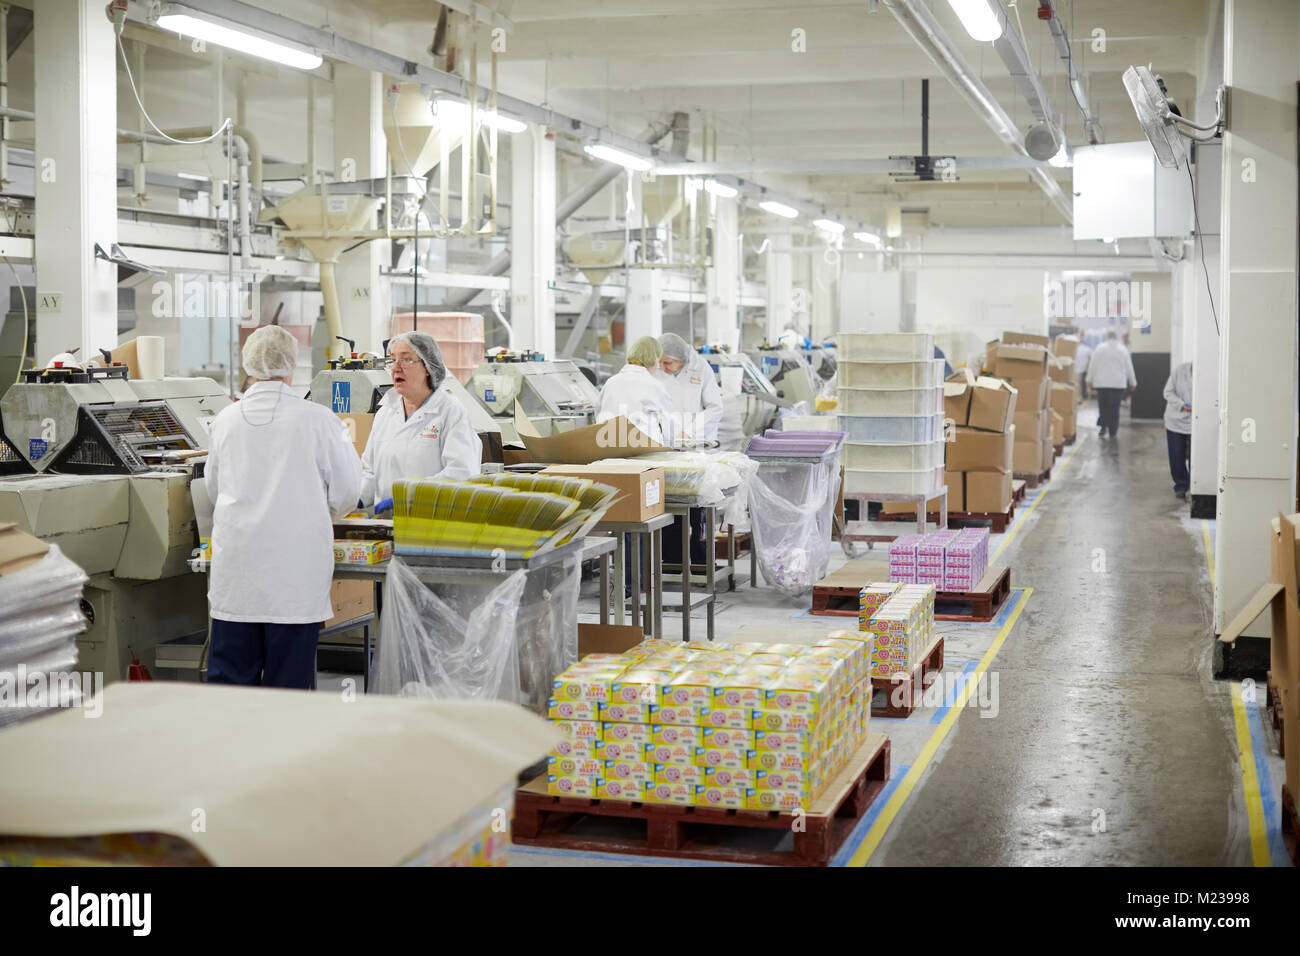 Swizzels Matlow de New Mills, Derbyshire, faisant de bonbons dans leur usine Banque D'Images